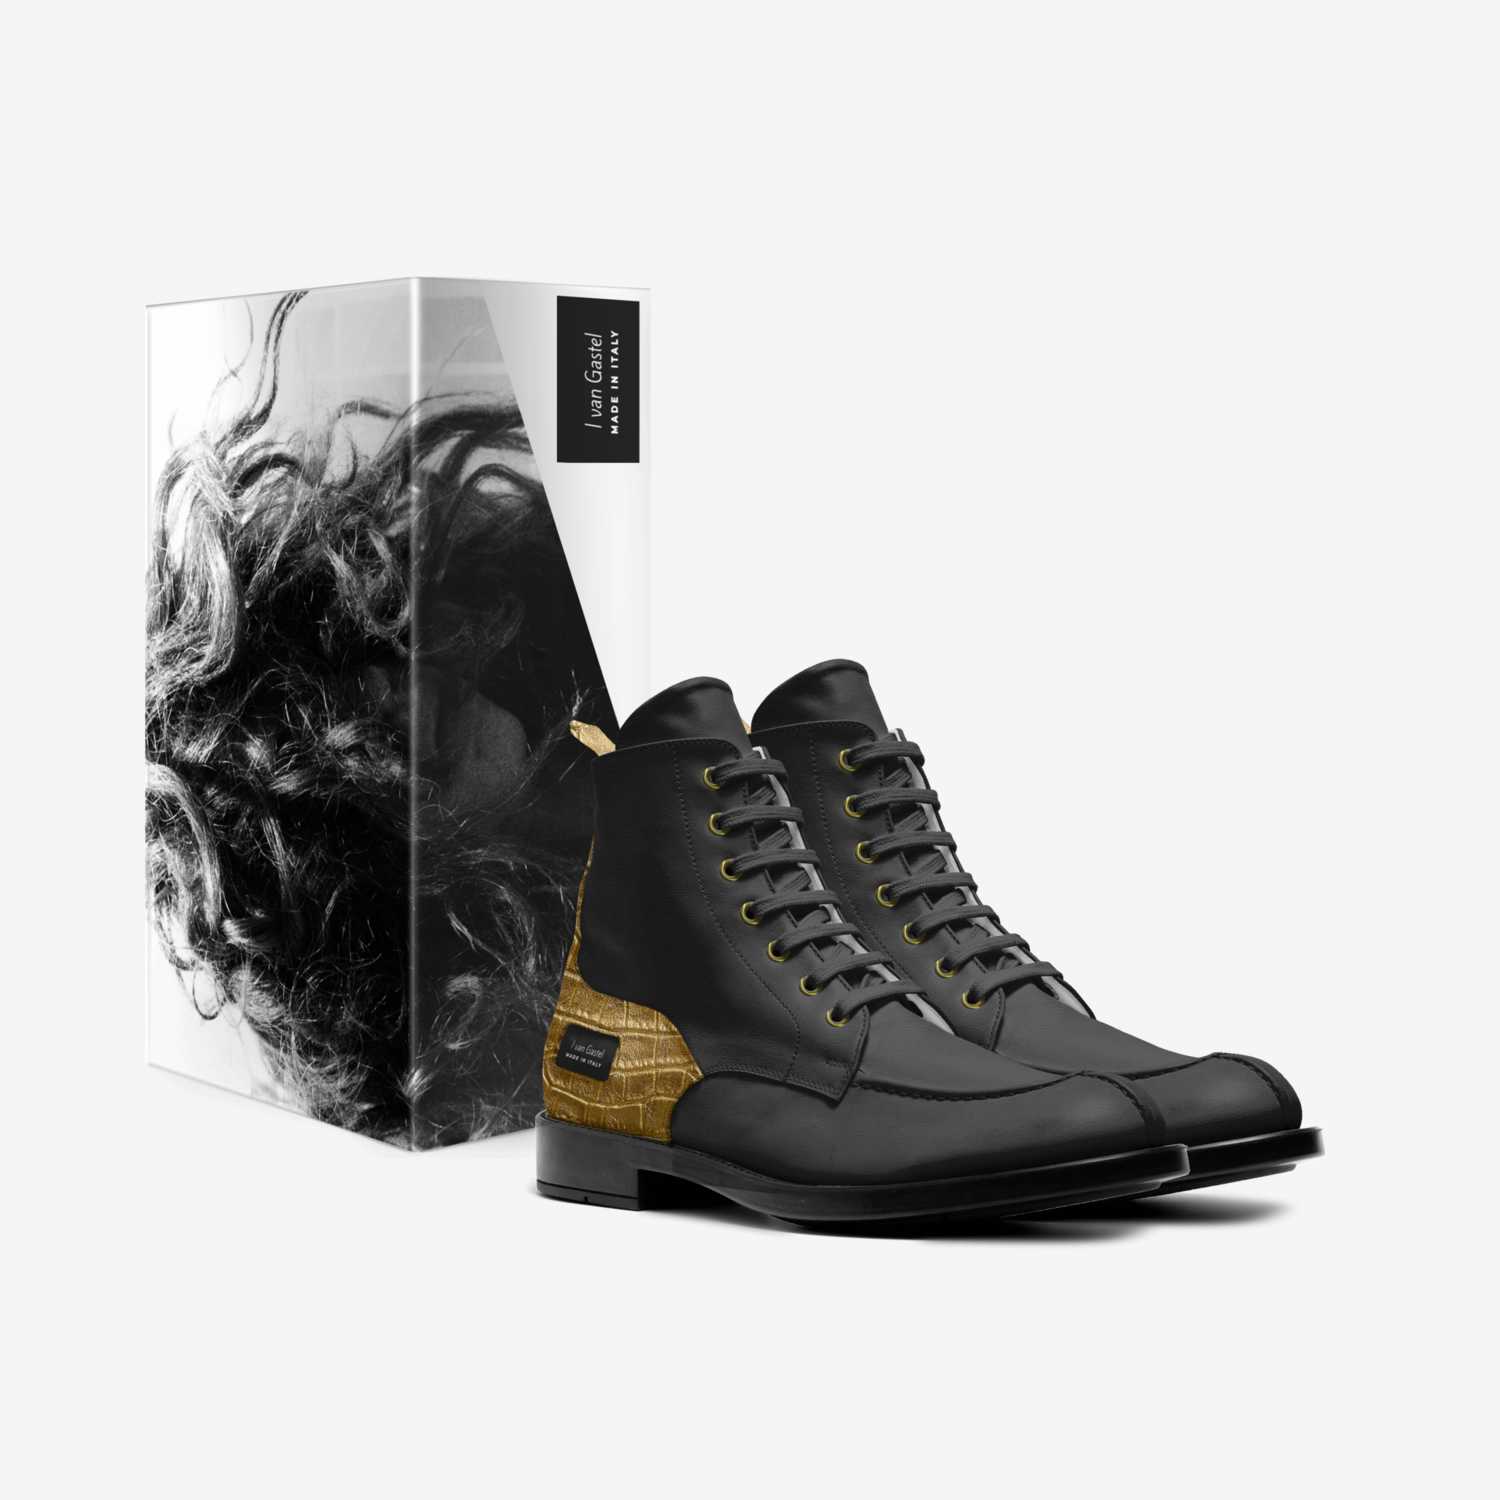 I van Gastel custom made in Italy shoes by Inja van Gastel | Box view